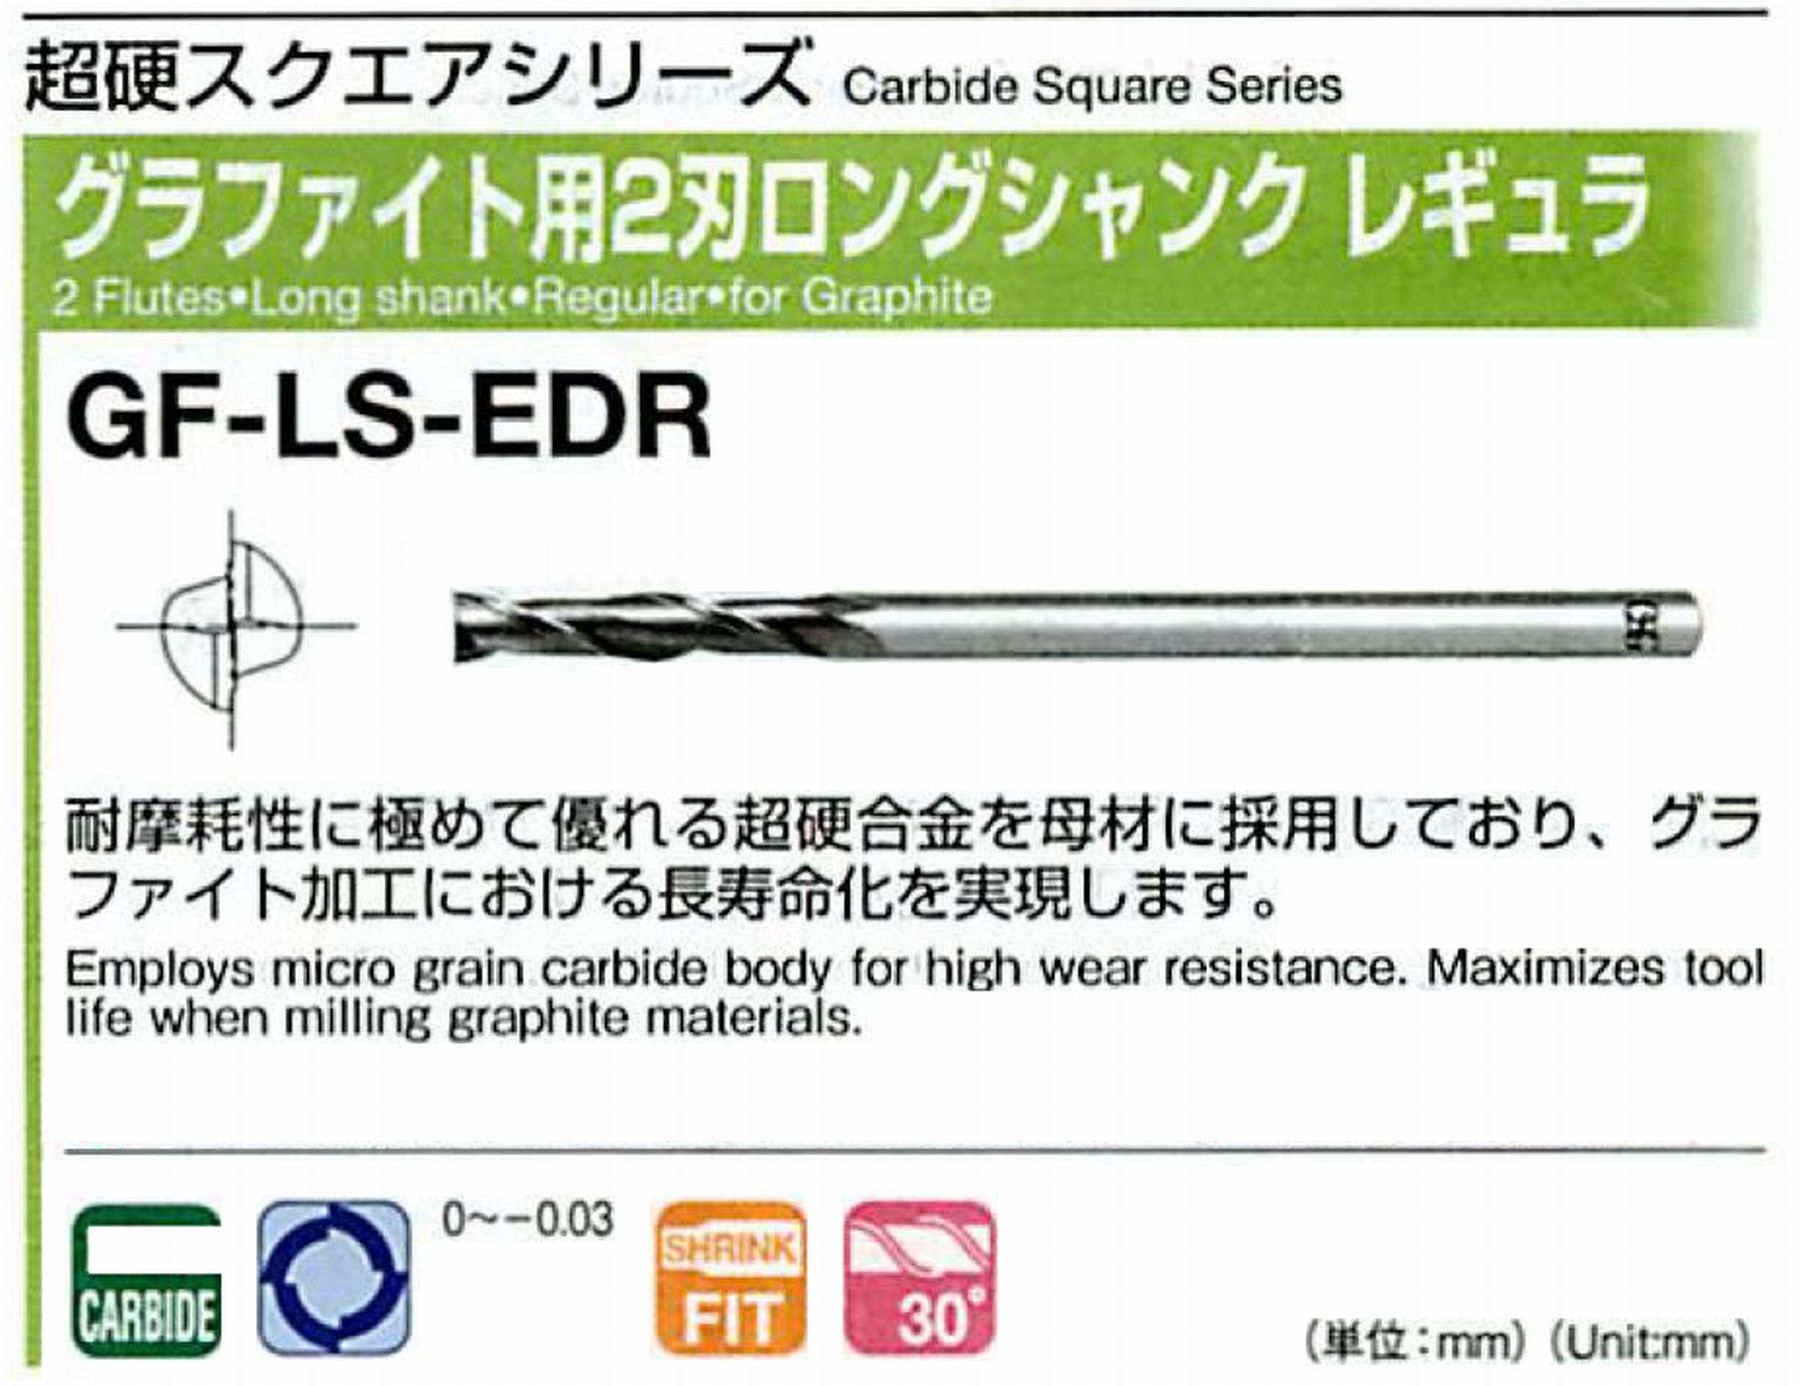 オーエスジー/OSG グラファイト用 2刃ロングシャンクレギュラ GF-LS-EDR 外径2 全長100 刃長10 シャンク径4mm 首下長25 首径1.9